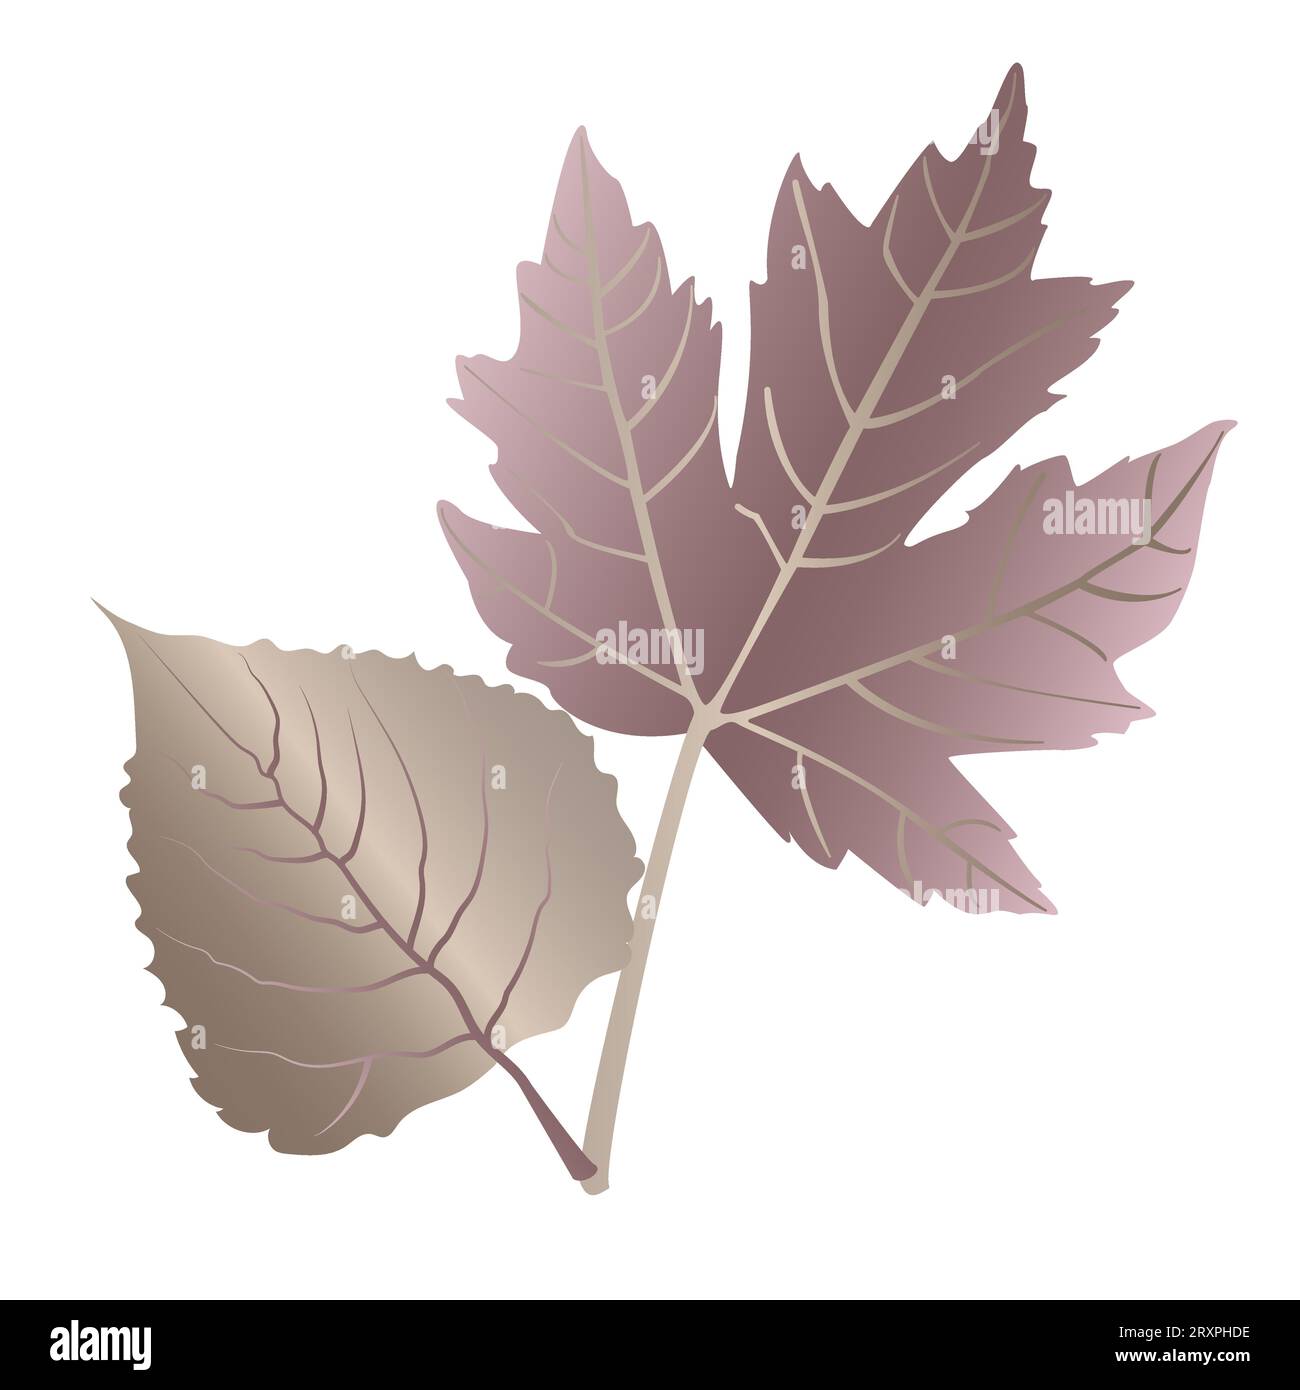 Herbst detaillierte Ahorn- und Walnussblätter mit Aderblattblumen in ungewöhnlichen Metallic-Farben auf weißem Hintergrund. Stock Vektor